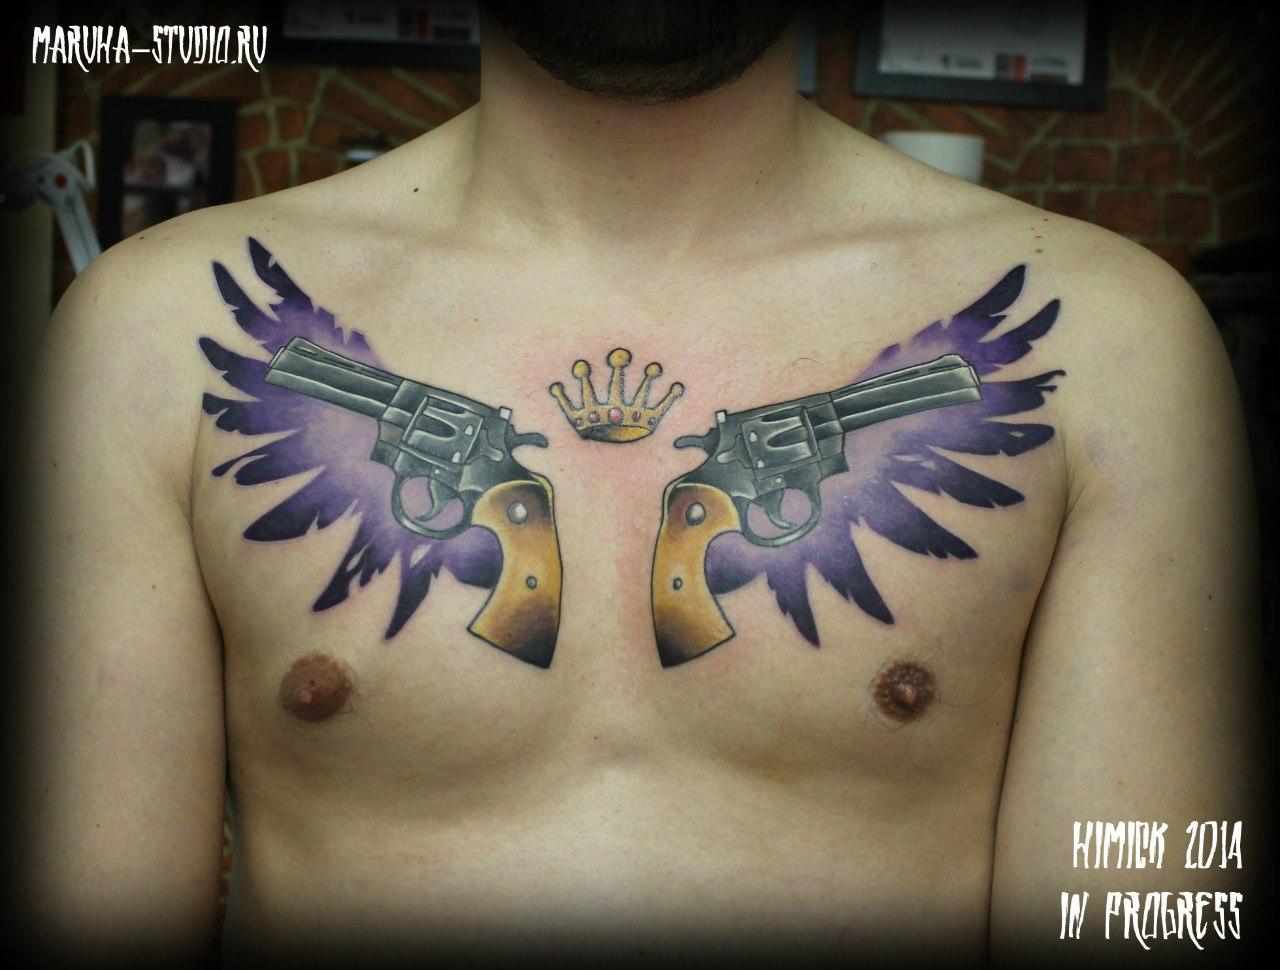 Художественная татуировка " Револьверы и крылья" от Евгения Химика. Работа в процессе.